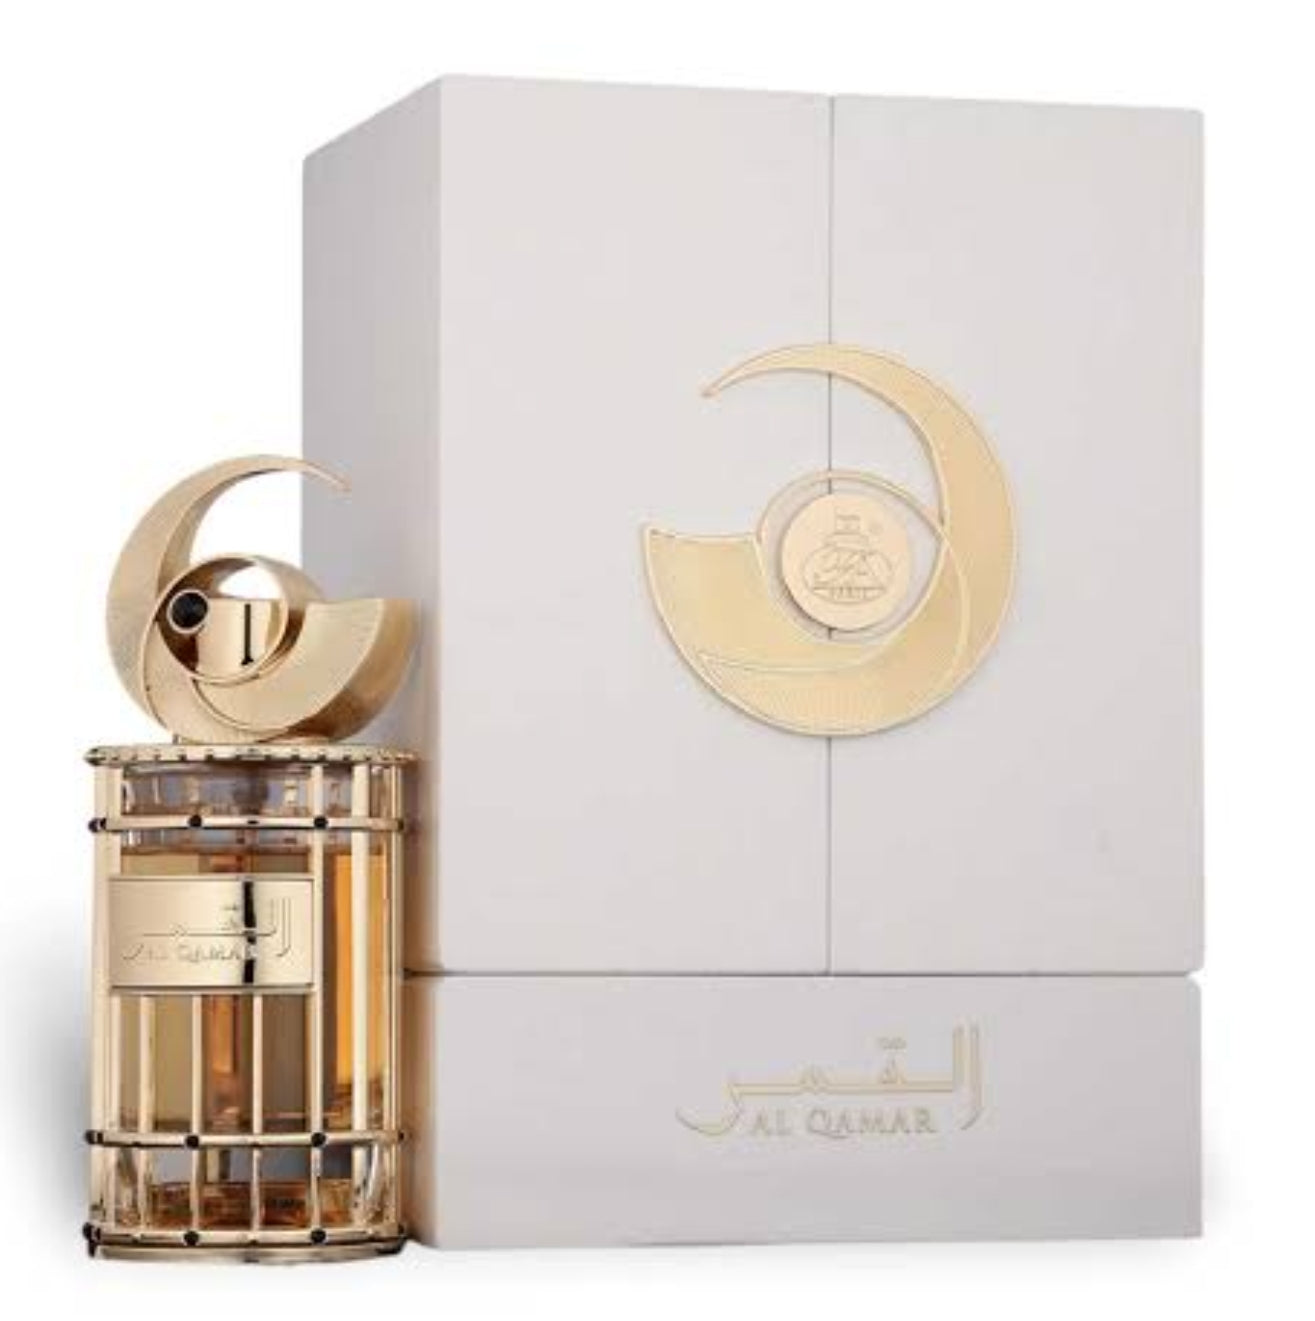 Al Qamar - Fragrance World